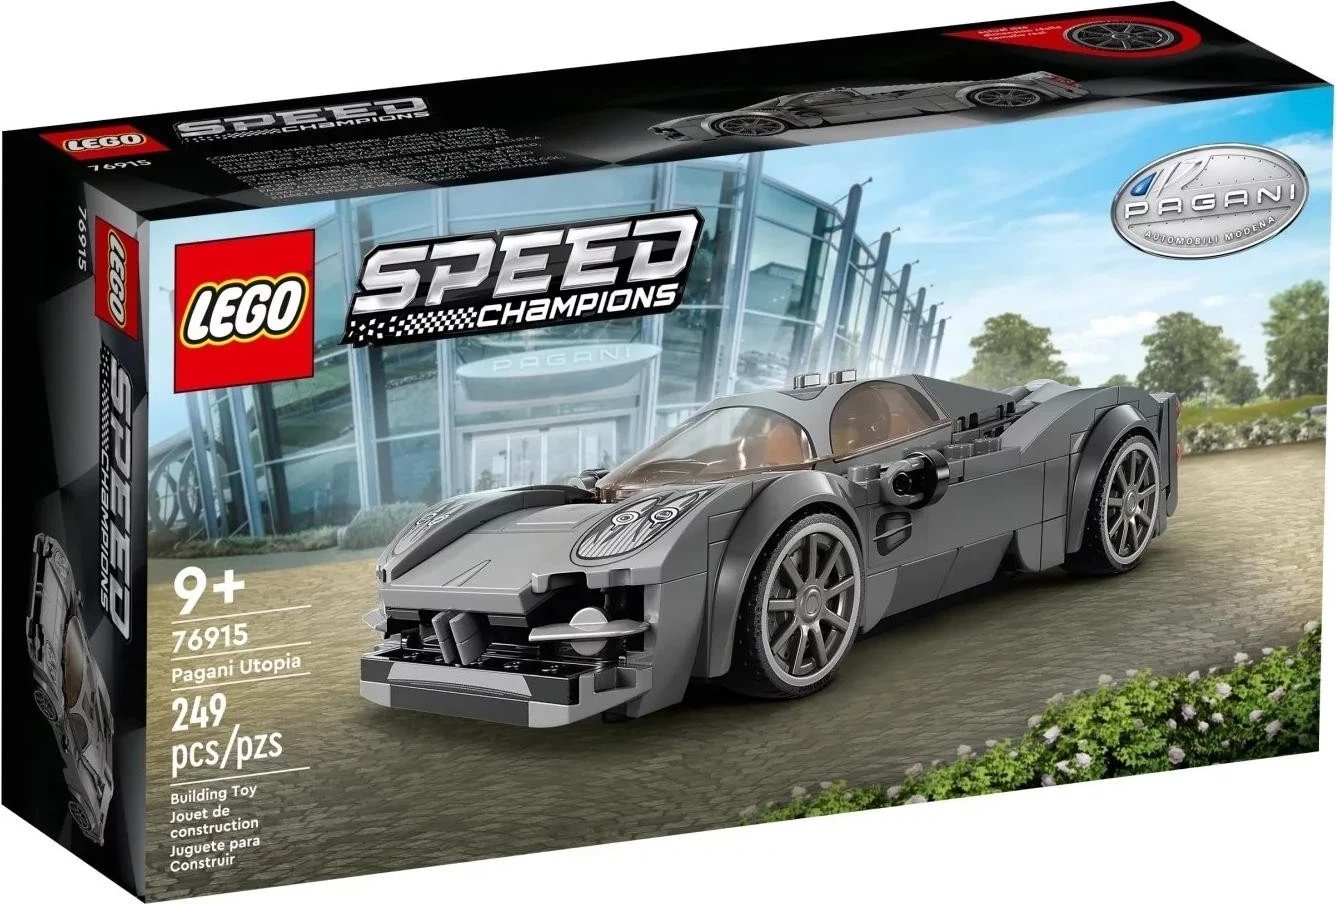 Lodër për fëmijë Lego, Speed Champions 76915